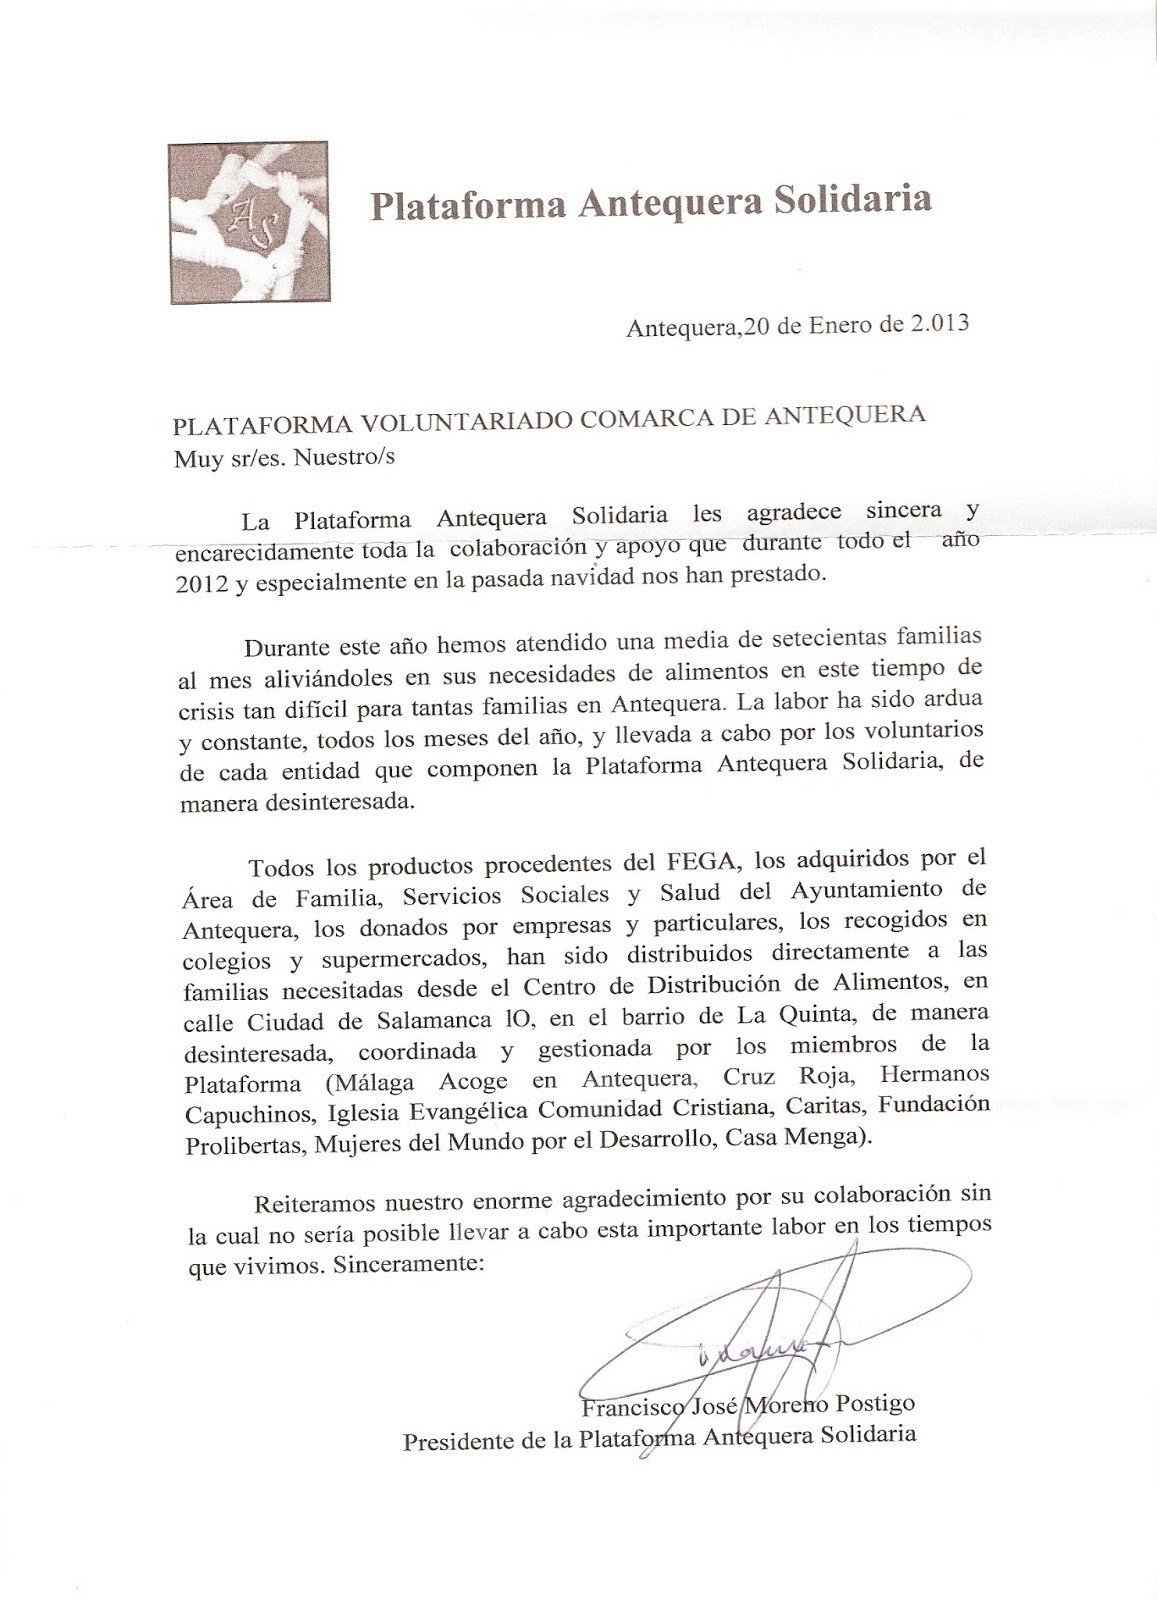 Plataforma del Voluntariado Comarca Antequera: abril 2013